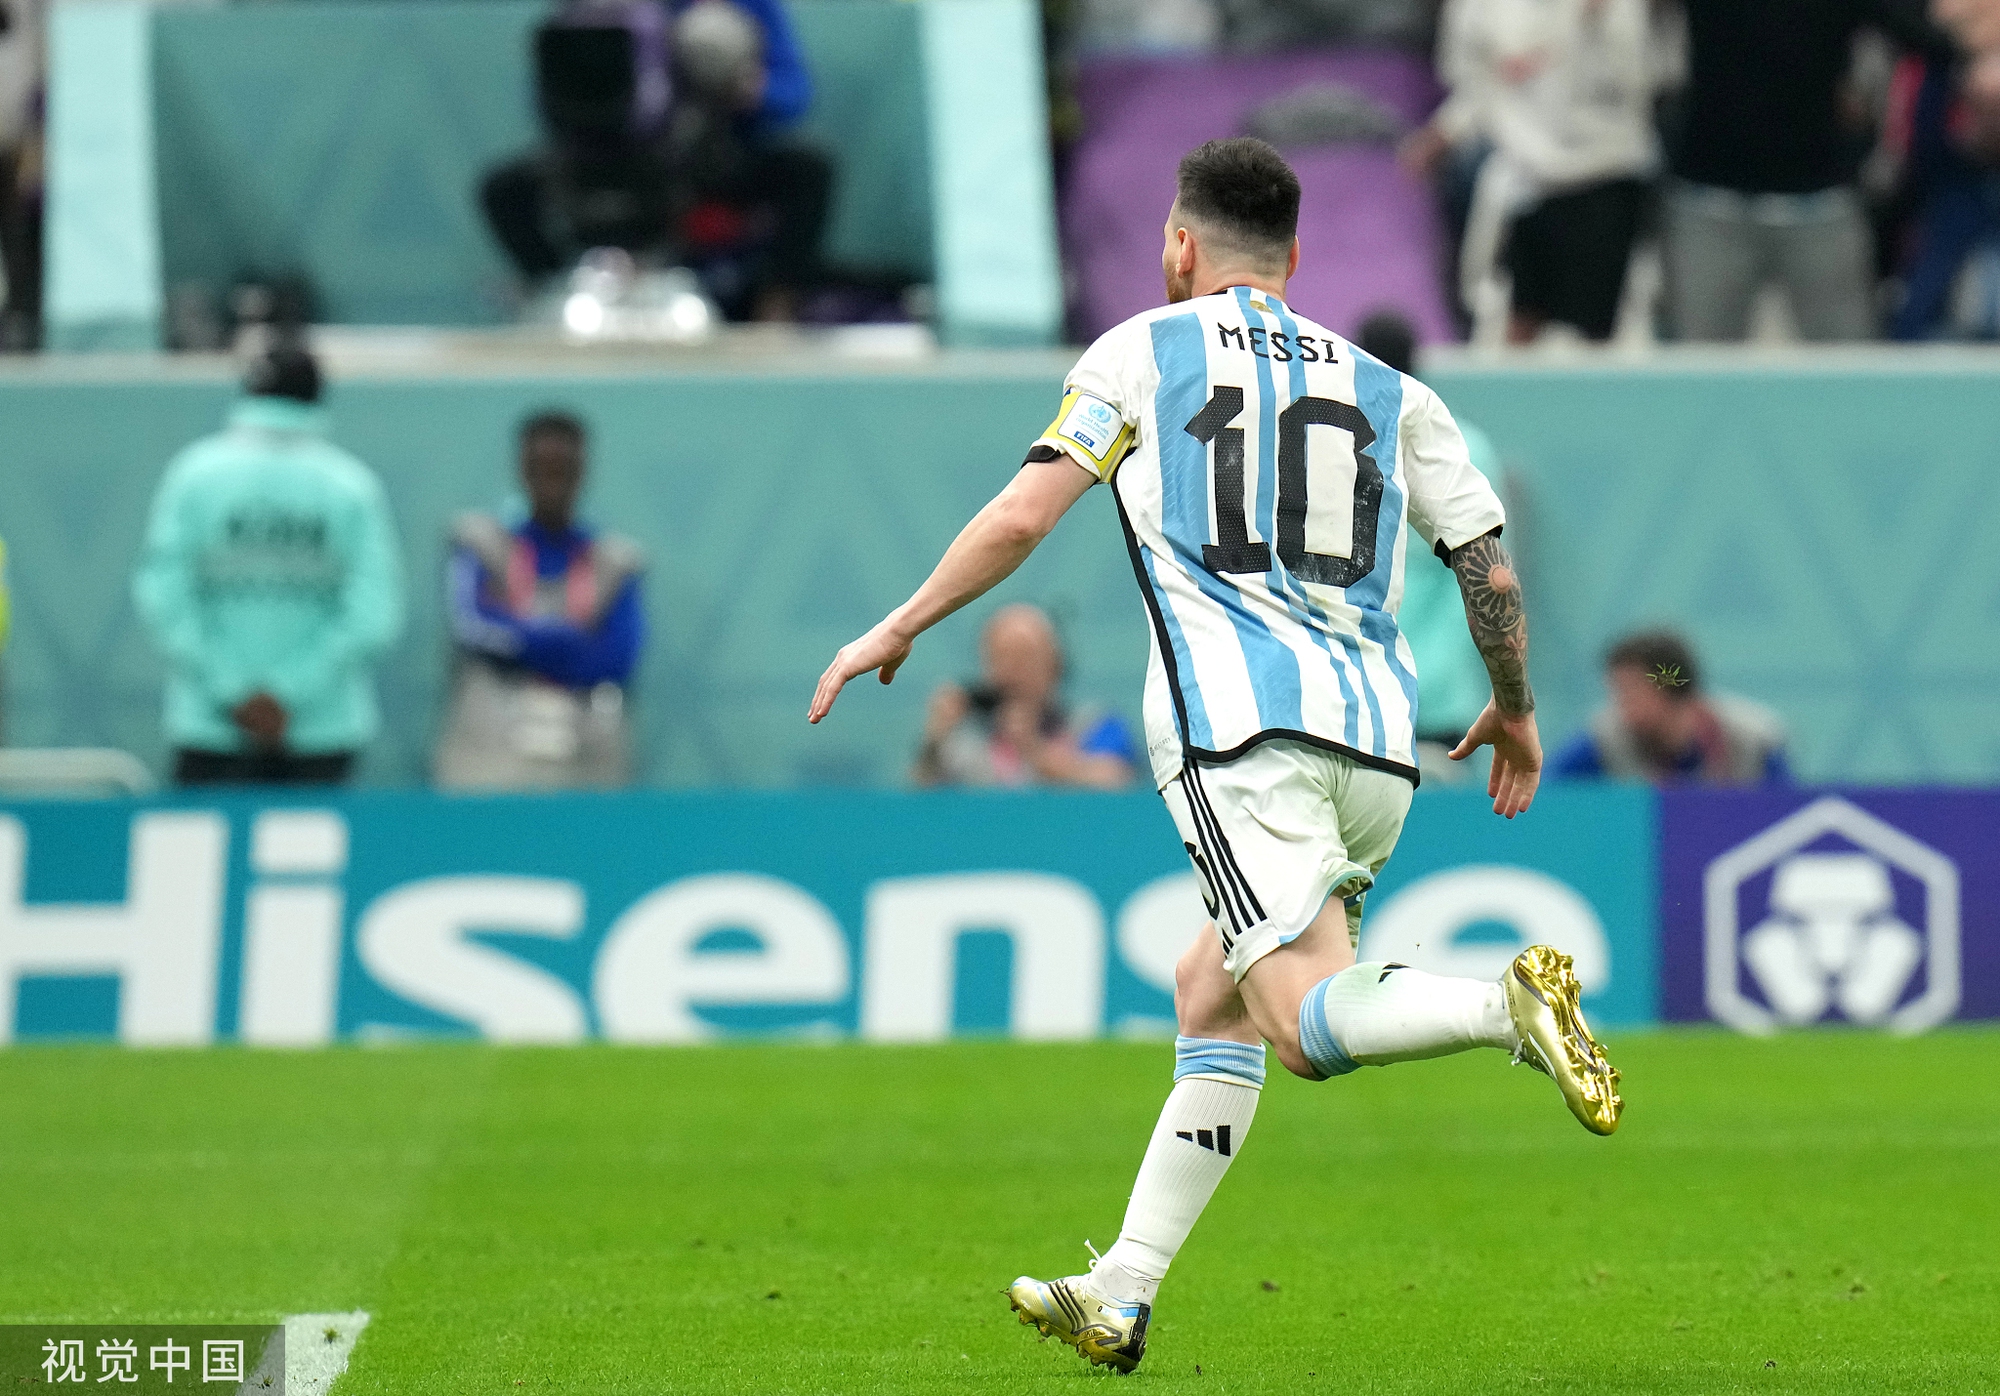 Vô địch World Cup hay không, Messi vẫn là cầu thủ vĩ đại nhất - Ảnh 2.